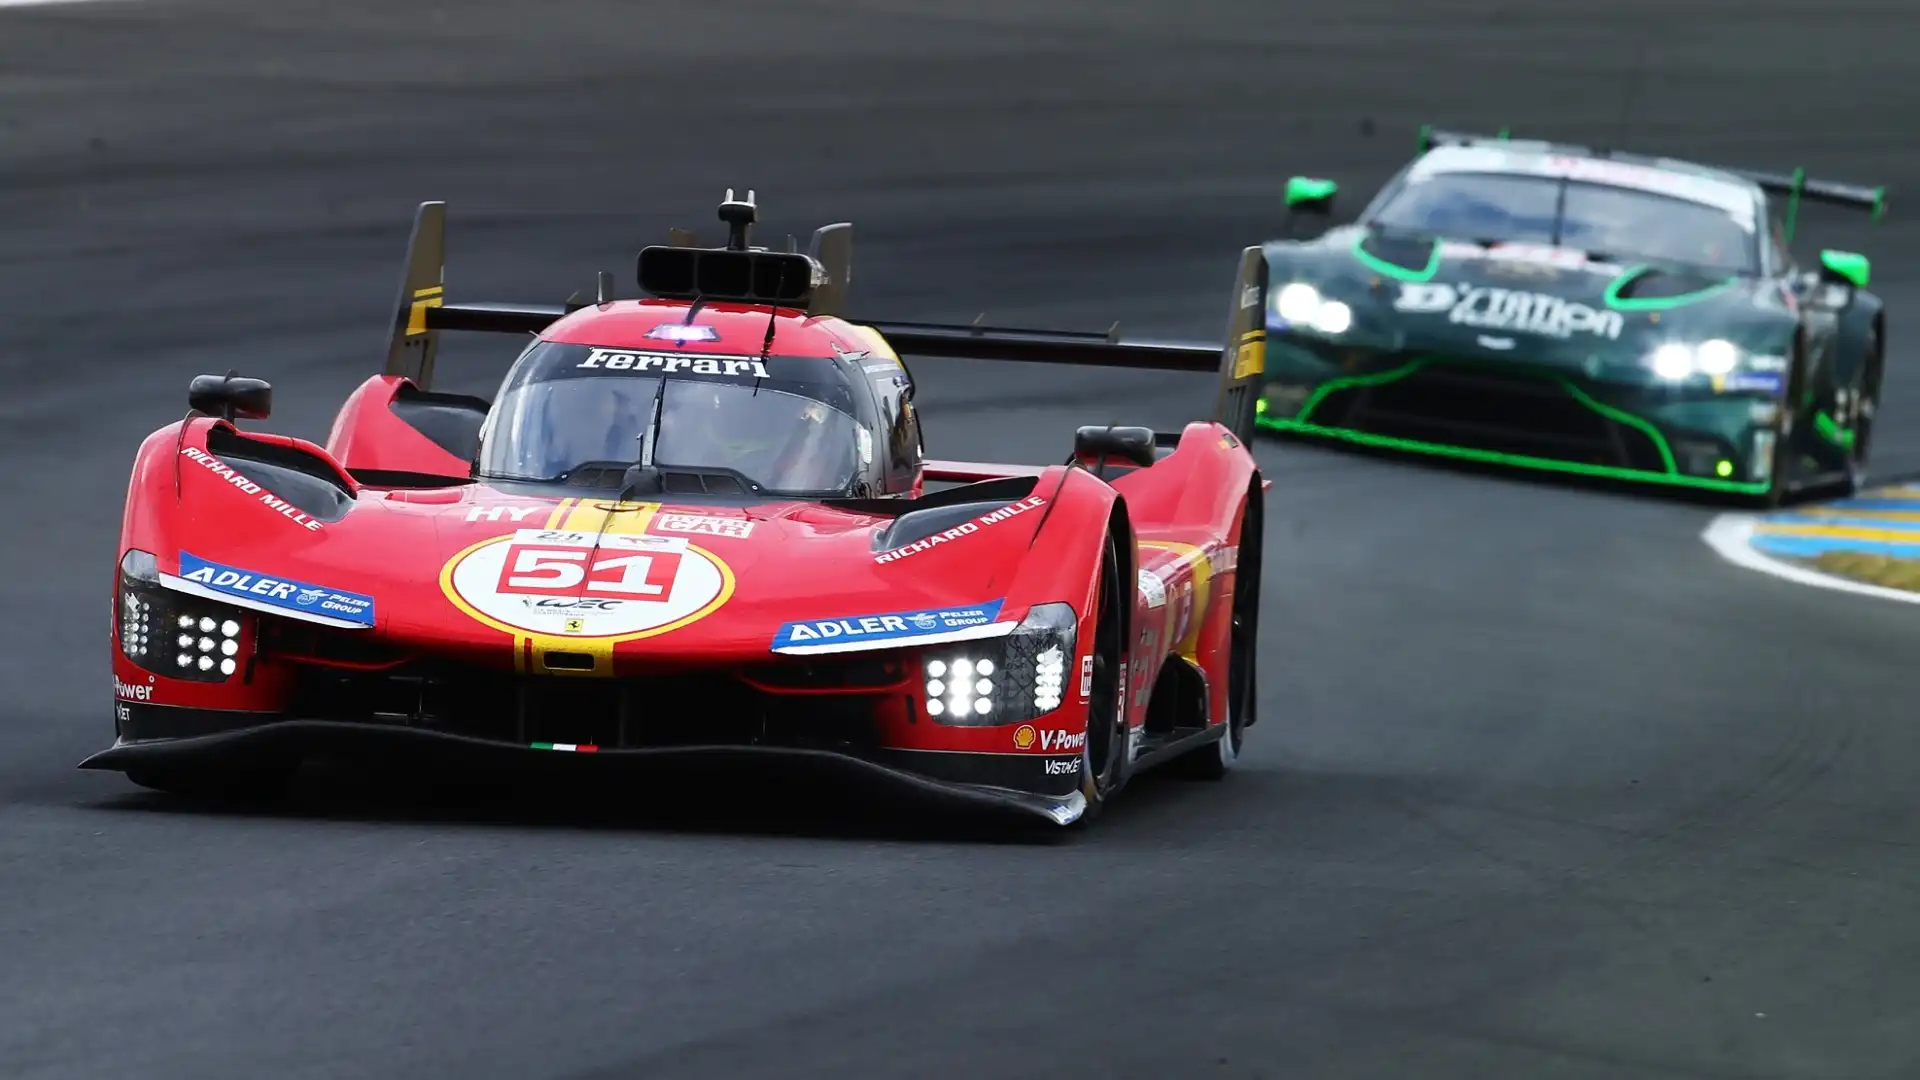 Storica vittoria della Ferrari alla 24 Ore di Le Mans